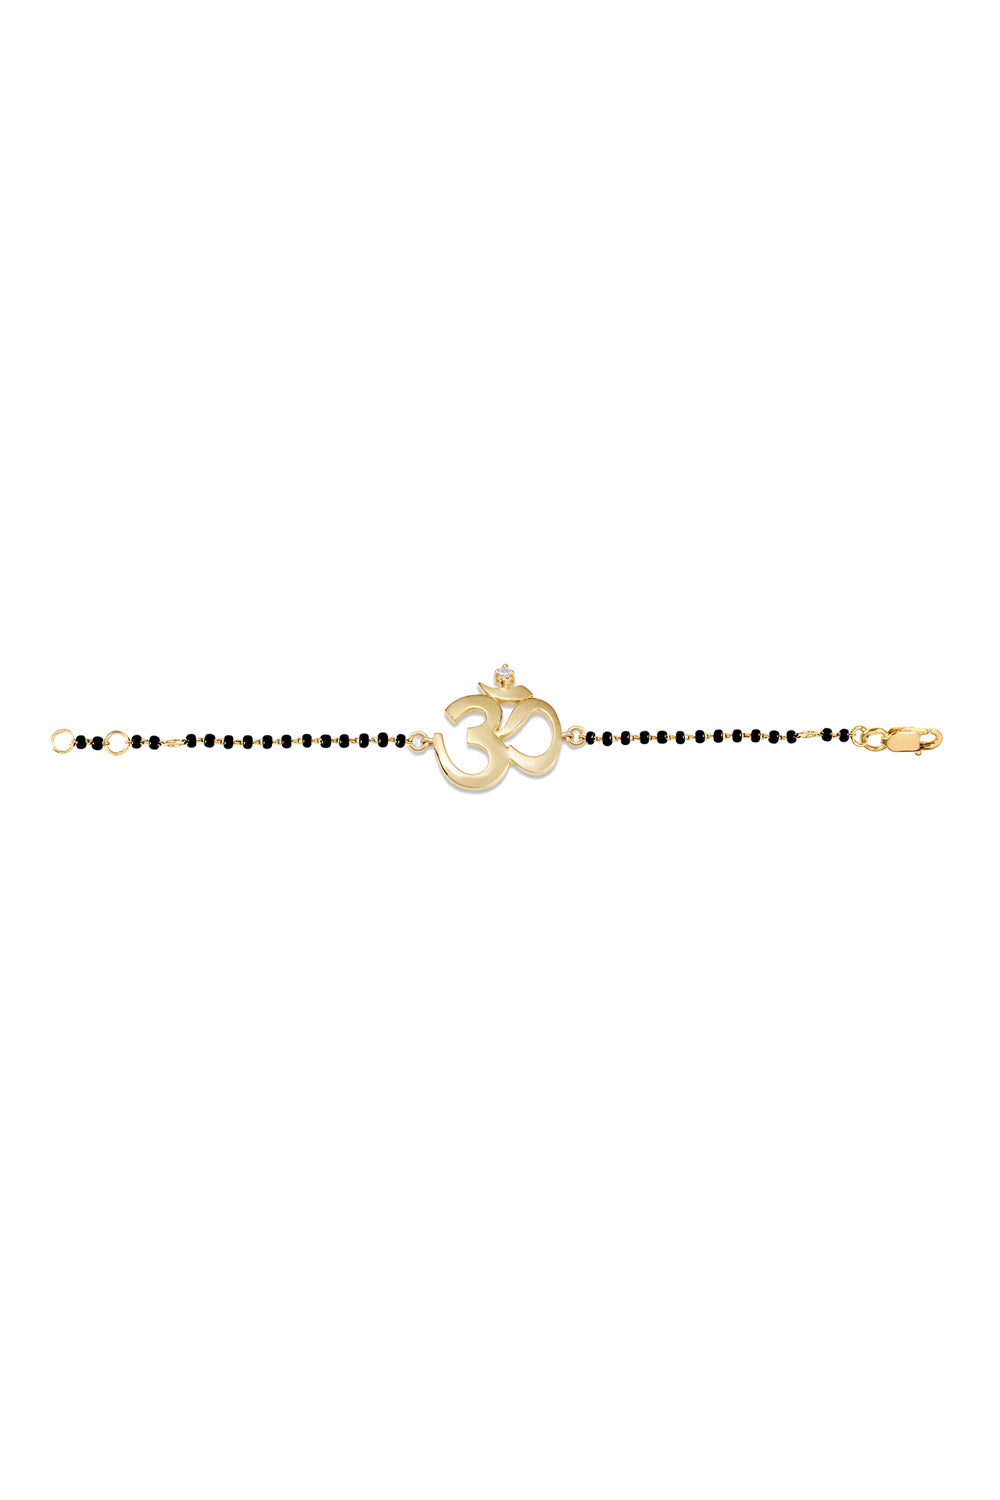 OM Single Diamond Nazar 14KT Gold Bracelet